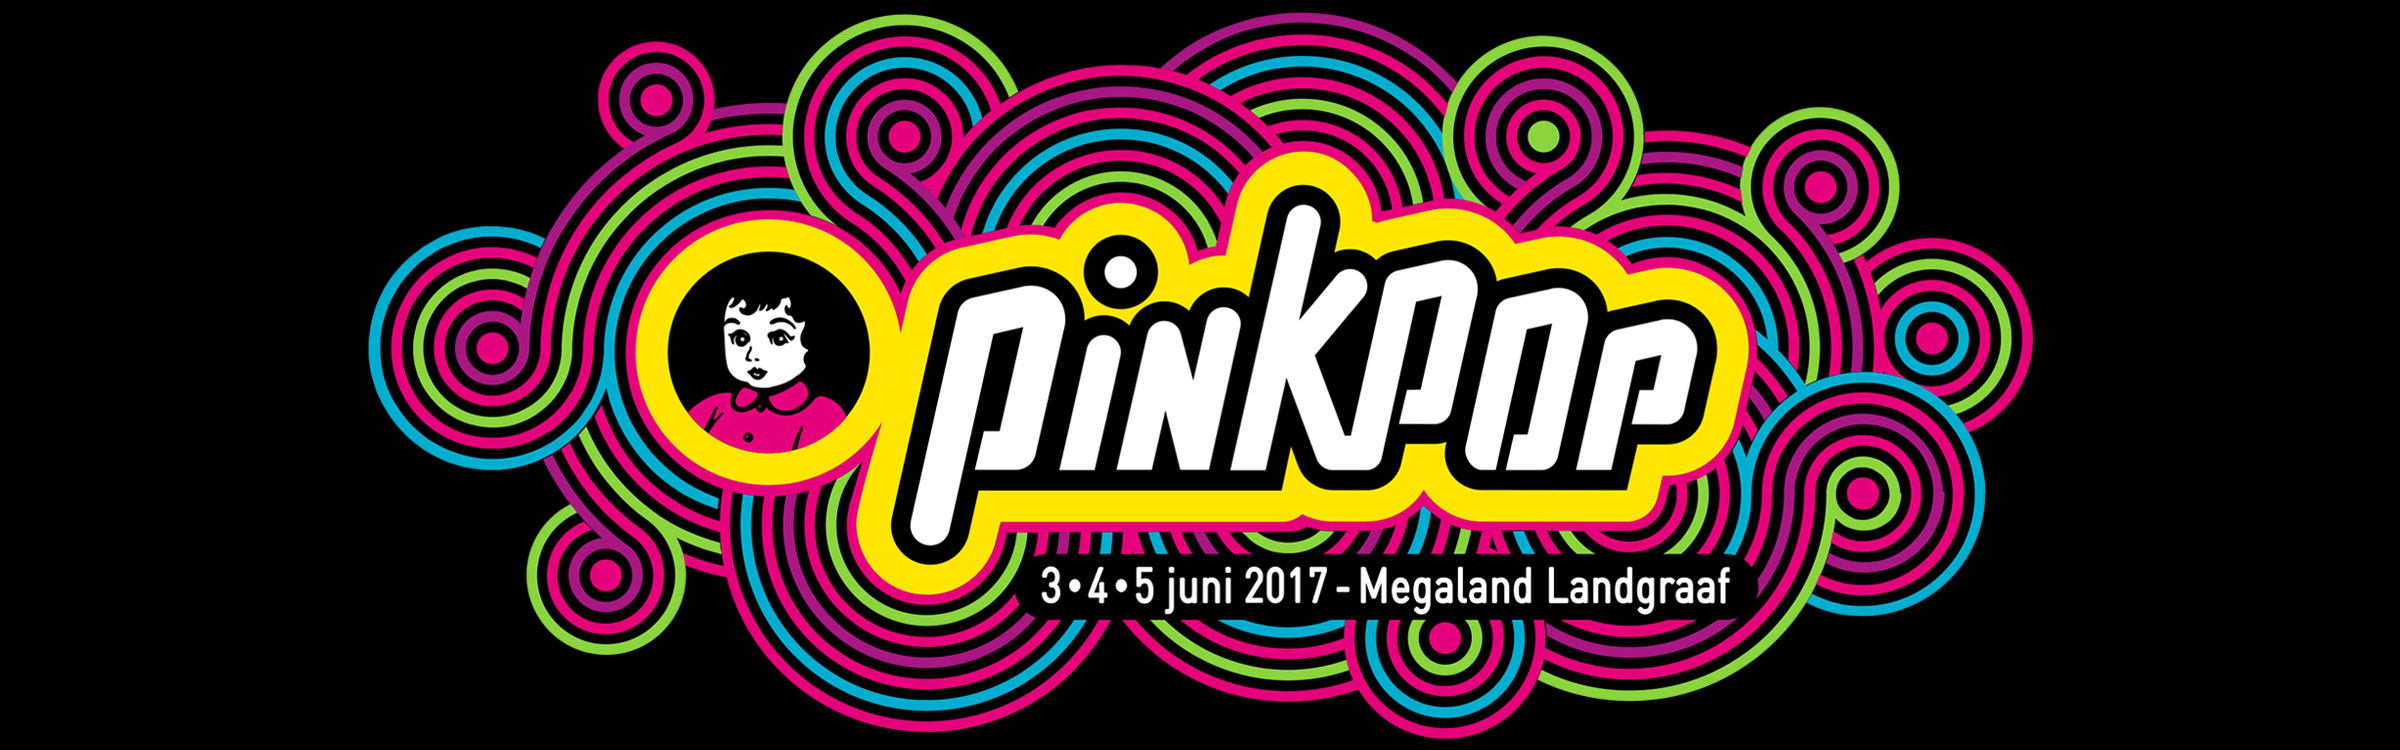 Pinkpop header 2017